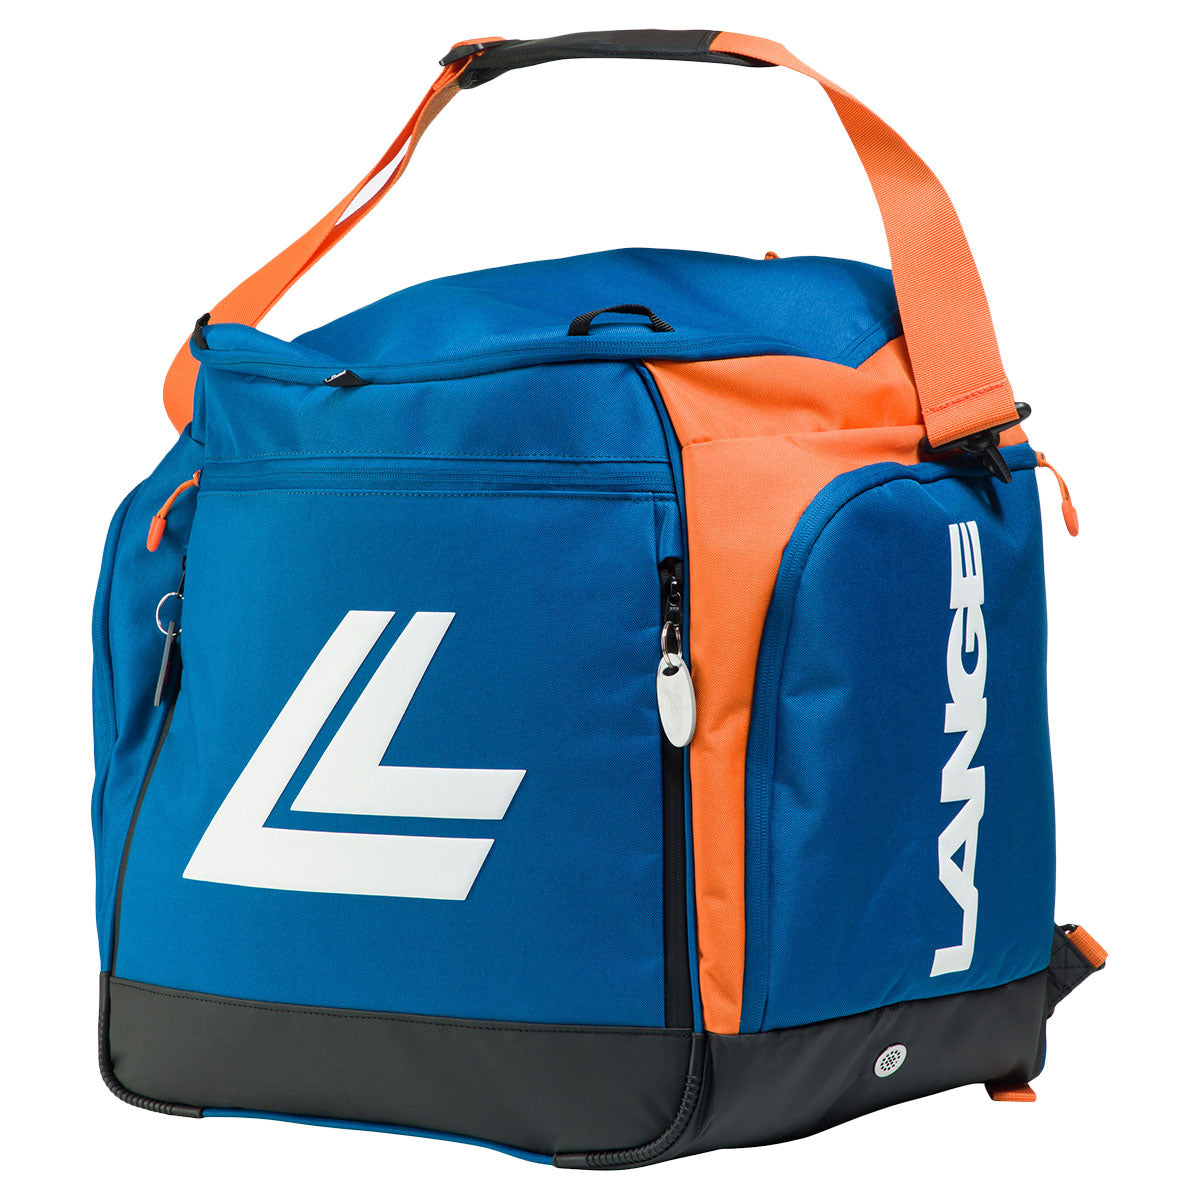 Lange Pro Bootbag Backpack - Blue - Ski Race from Ski Bartlett UK